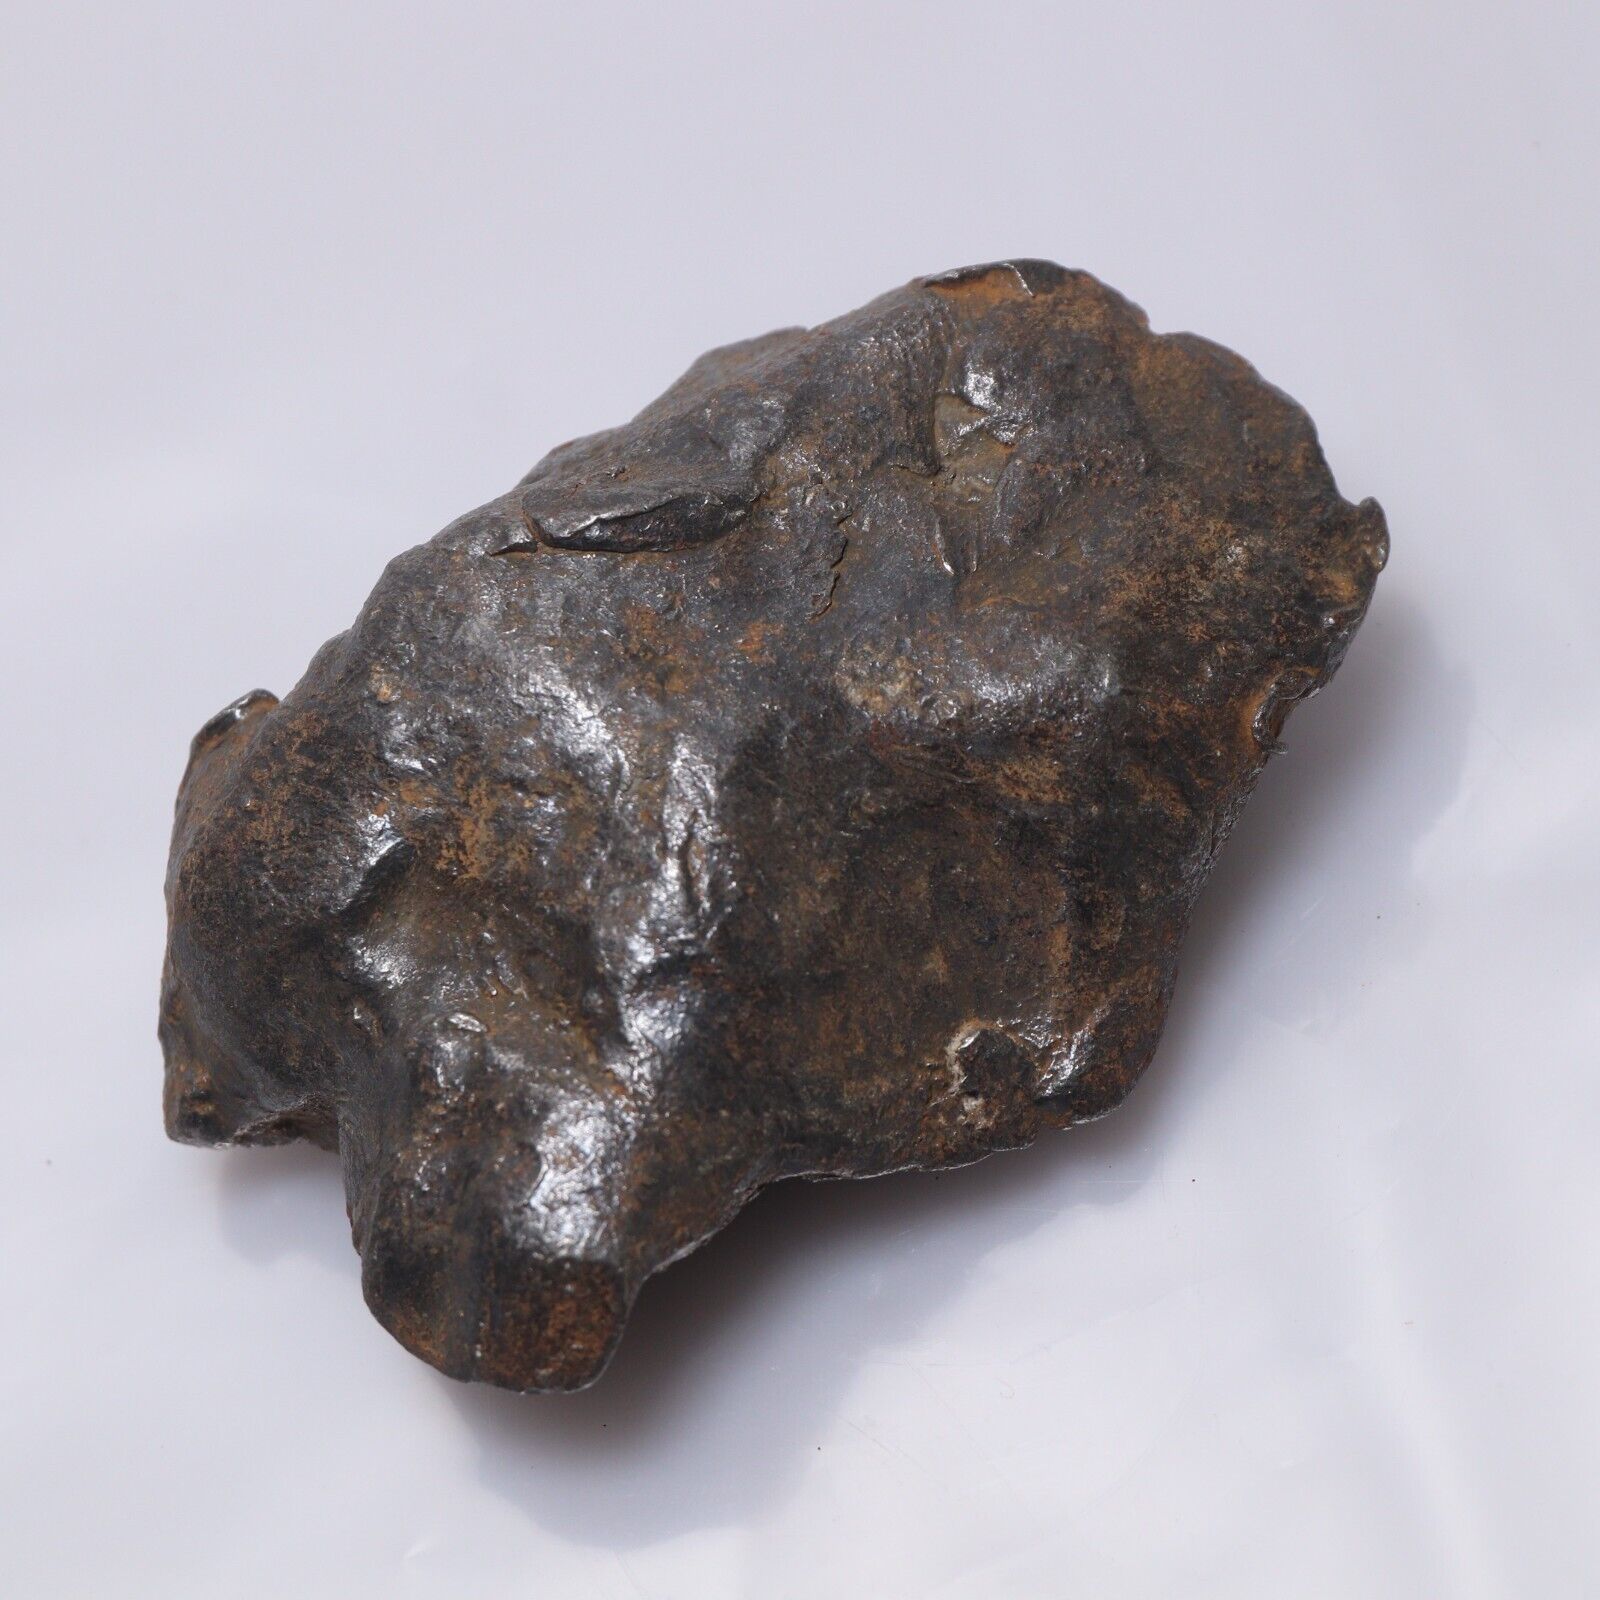 208g Gebel Kamil Meteorite,Egypt,Iron Meteorite,collection,Space Gift N3914